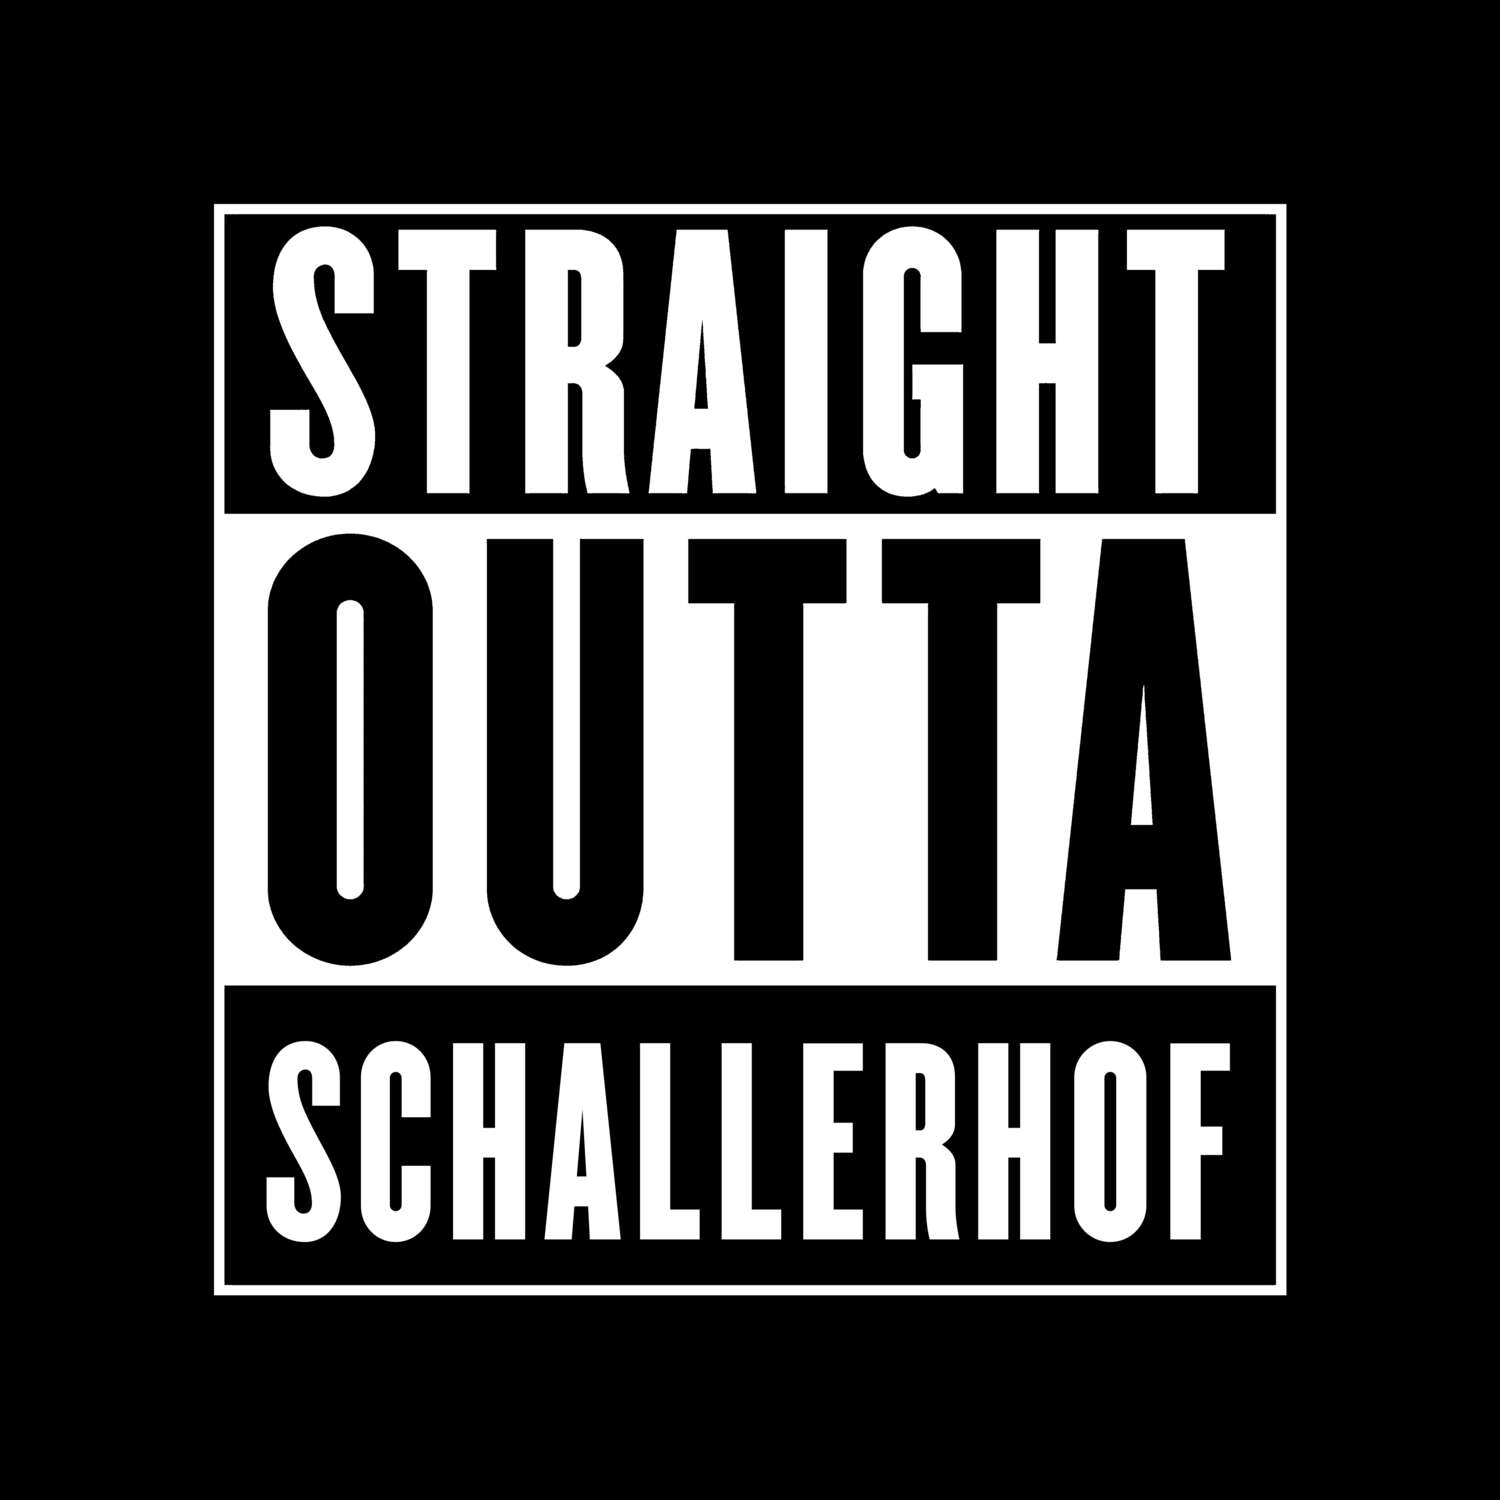 Schallerhof T-Shirt »Straight Outta«